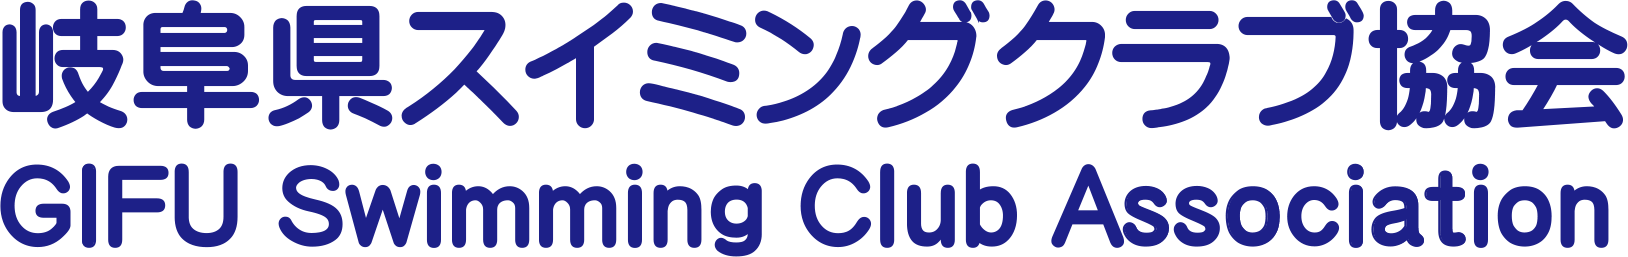 岐阜県スイミングクラブ協会